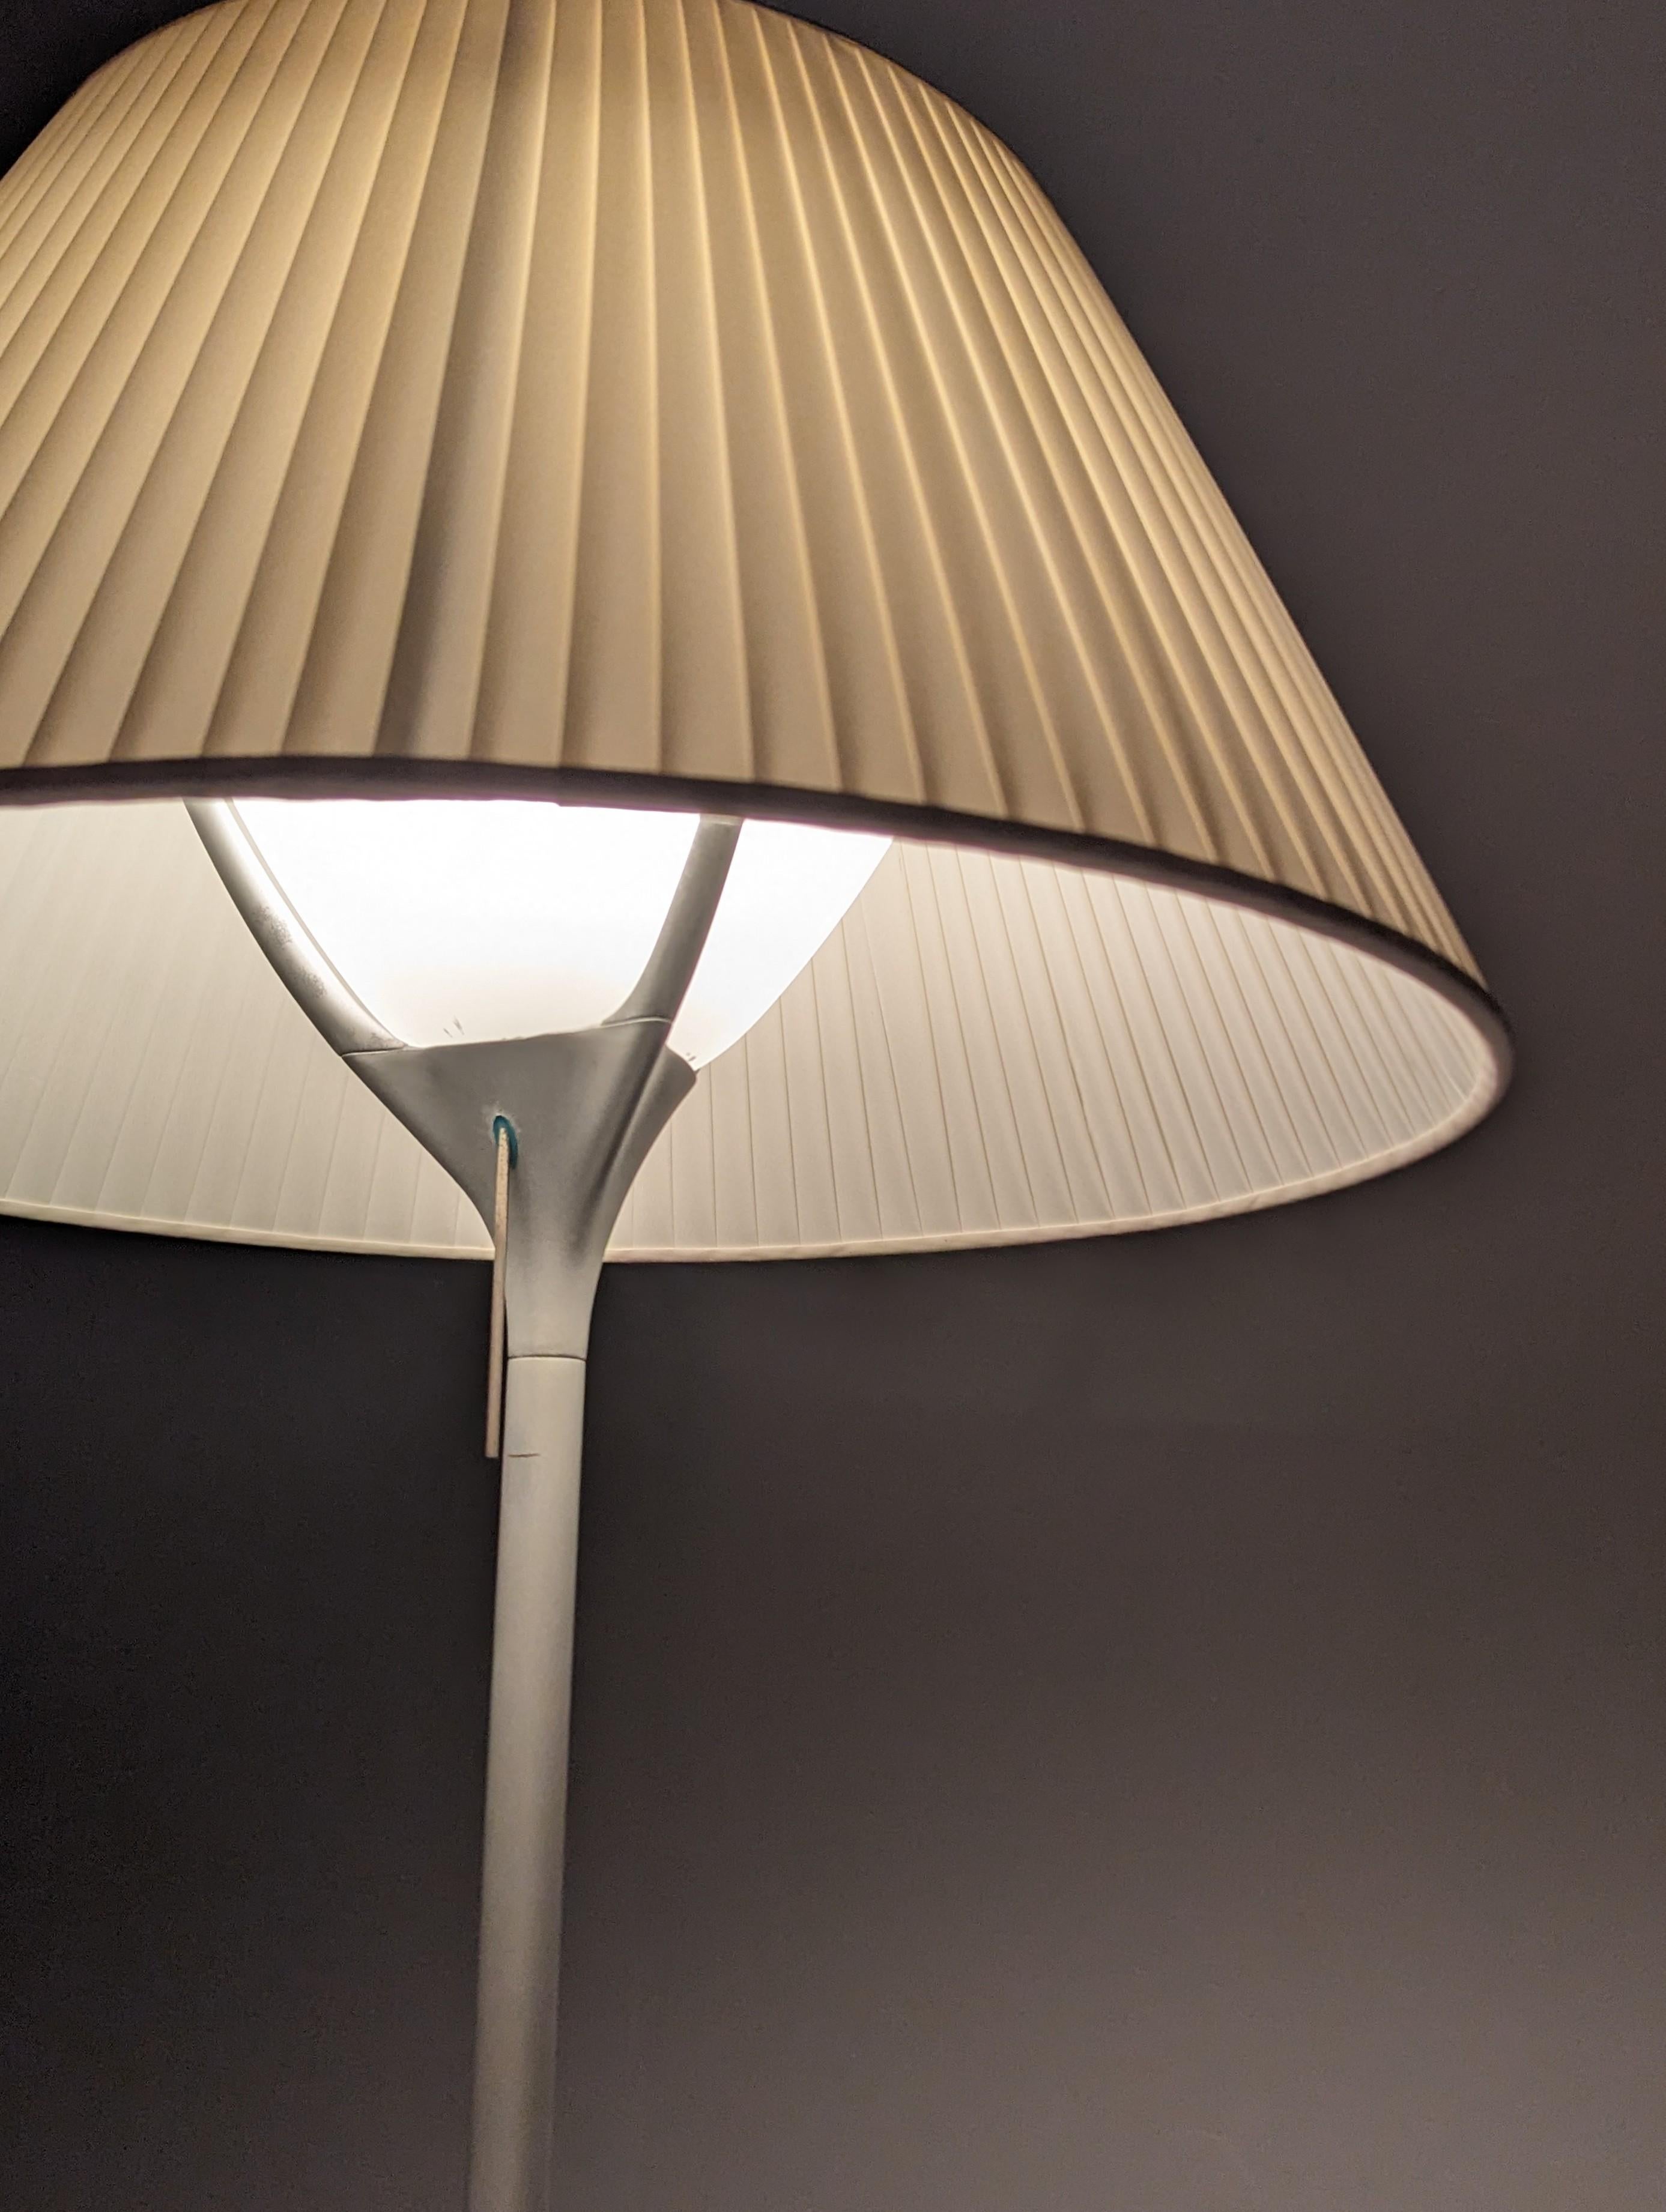 Elegante große Leuchte, entworfen von Philippe Starck für Flos, mit originellem plissiertem Lampenschirm.

